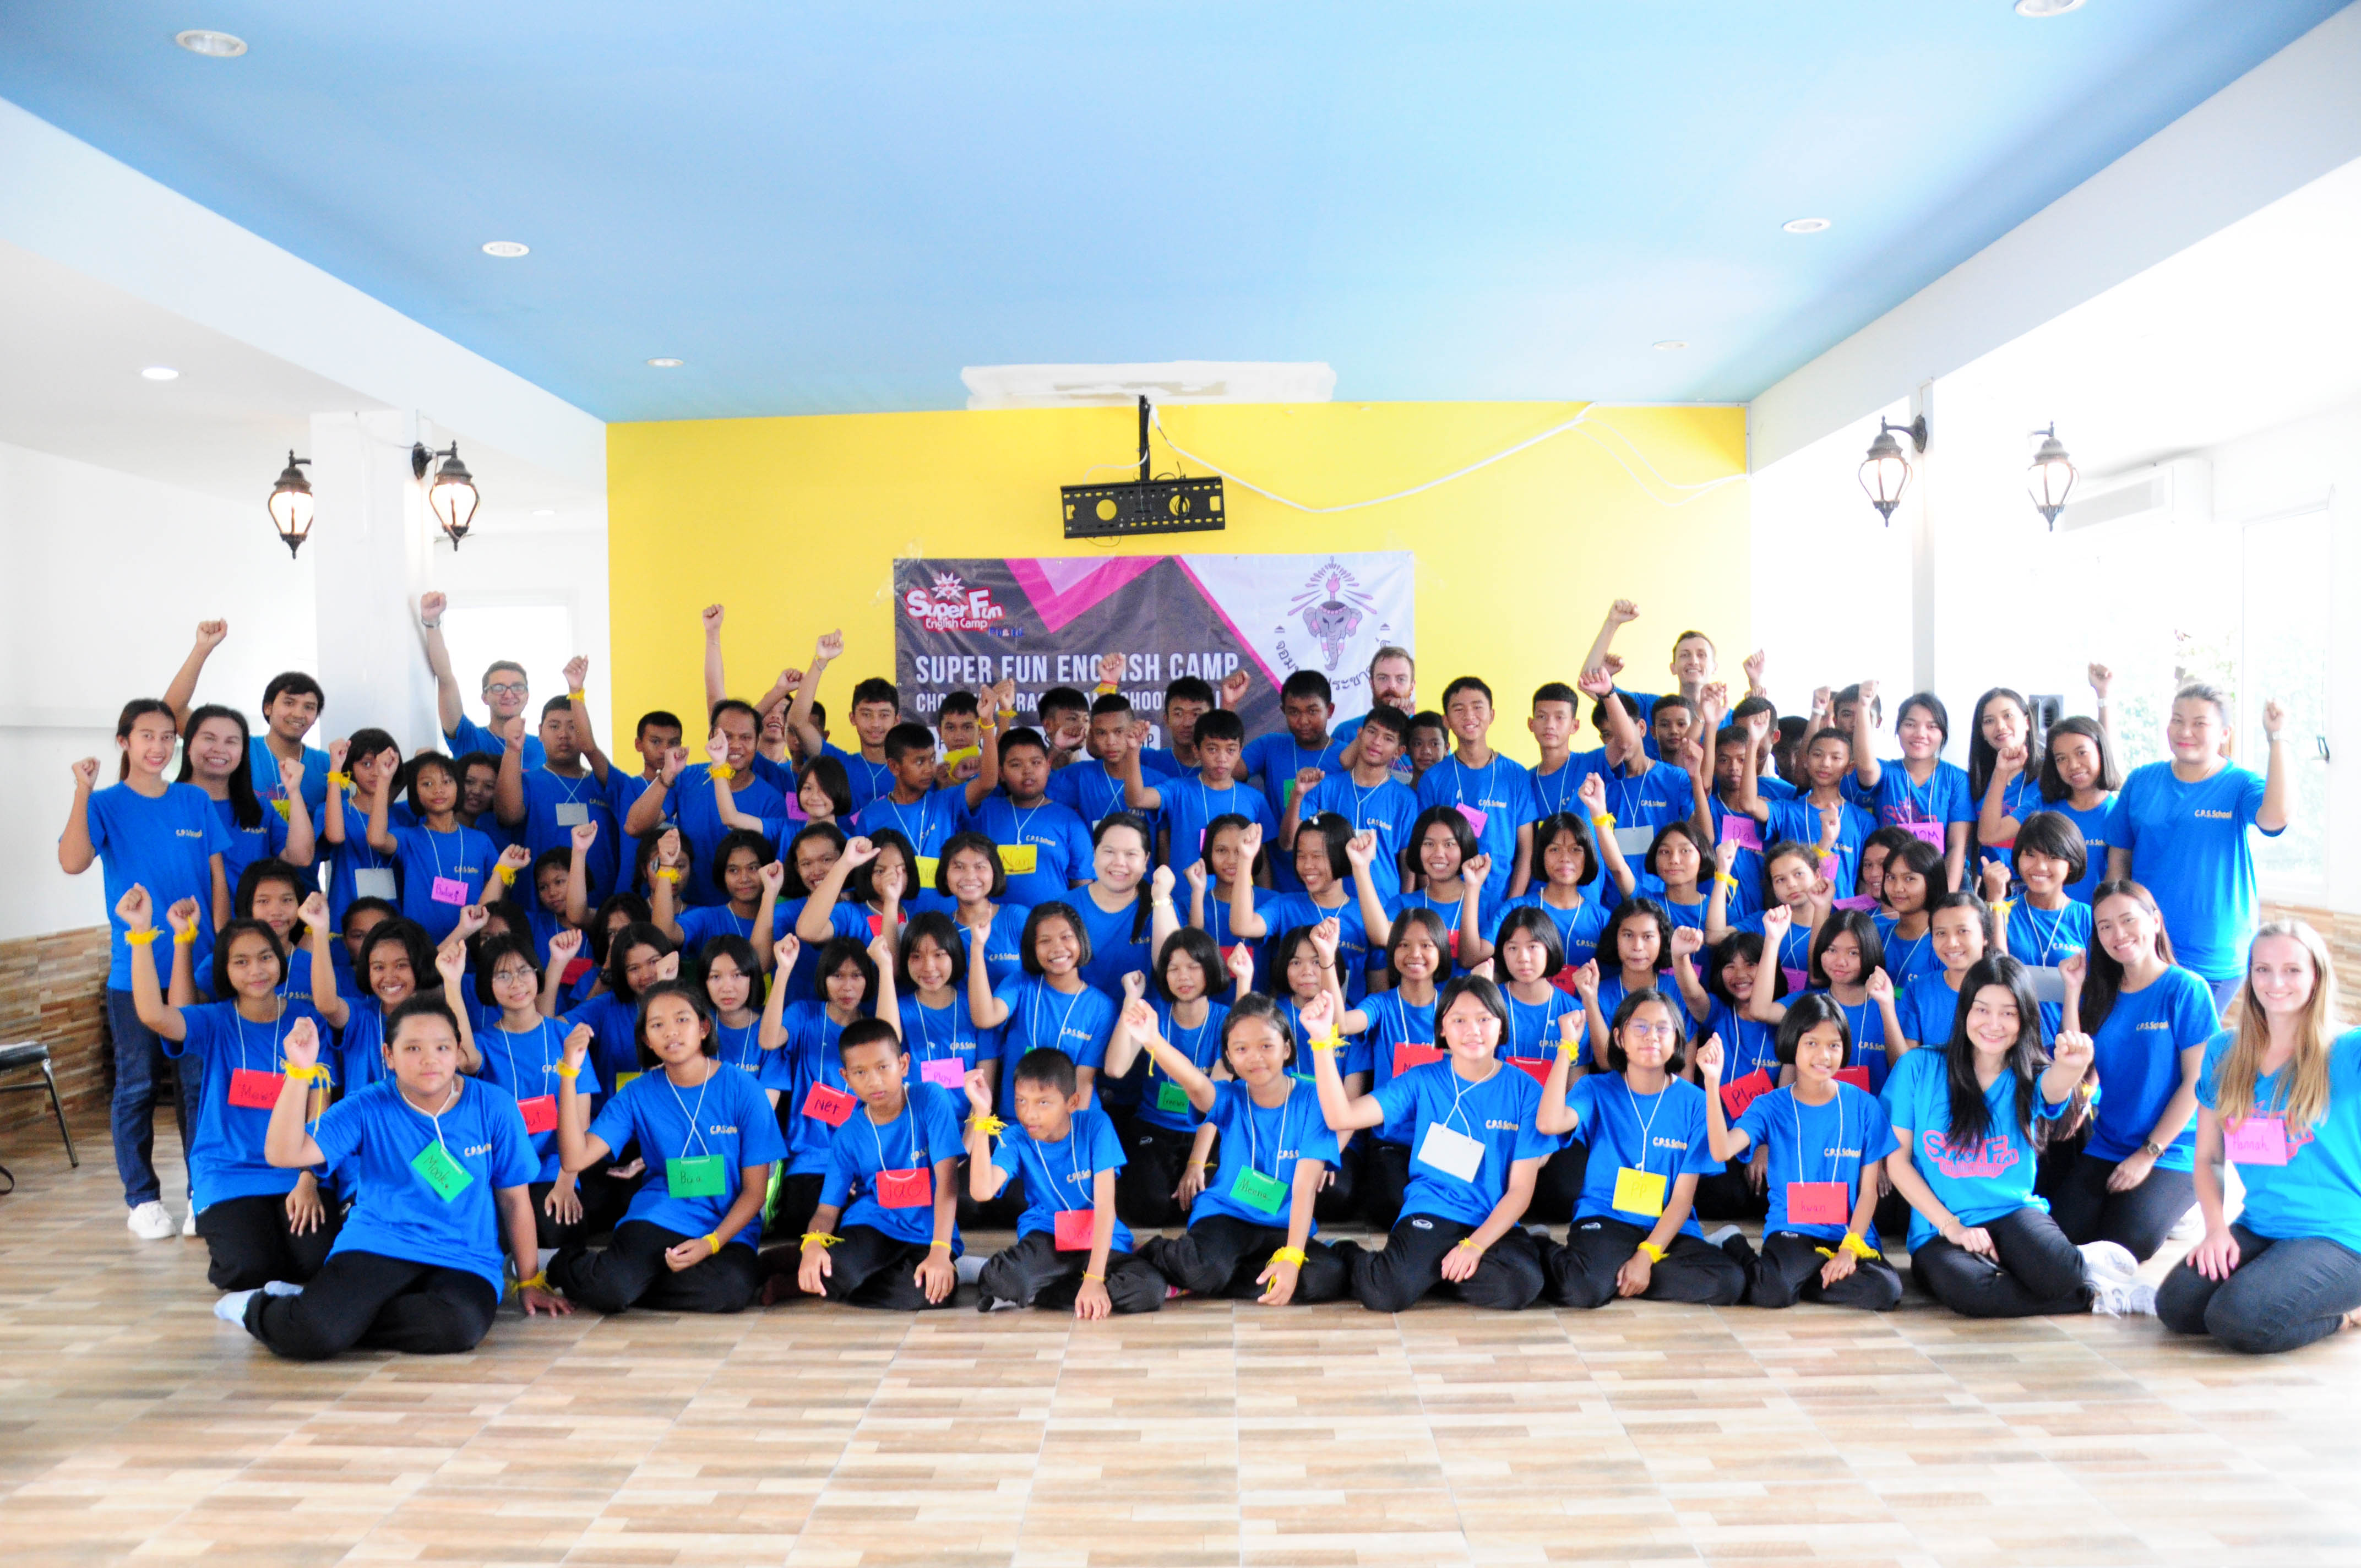 Super Fun English Camp "Chomphraprachasan School at Prapakarn Resort, Sattahip on 30 July 2019"